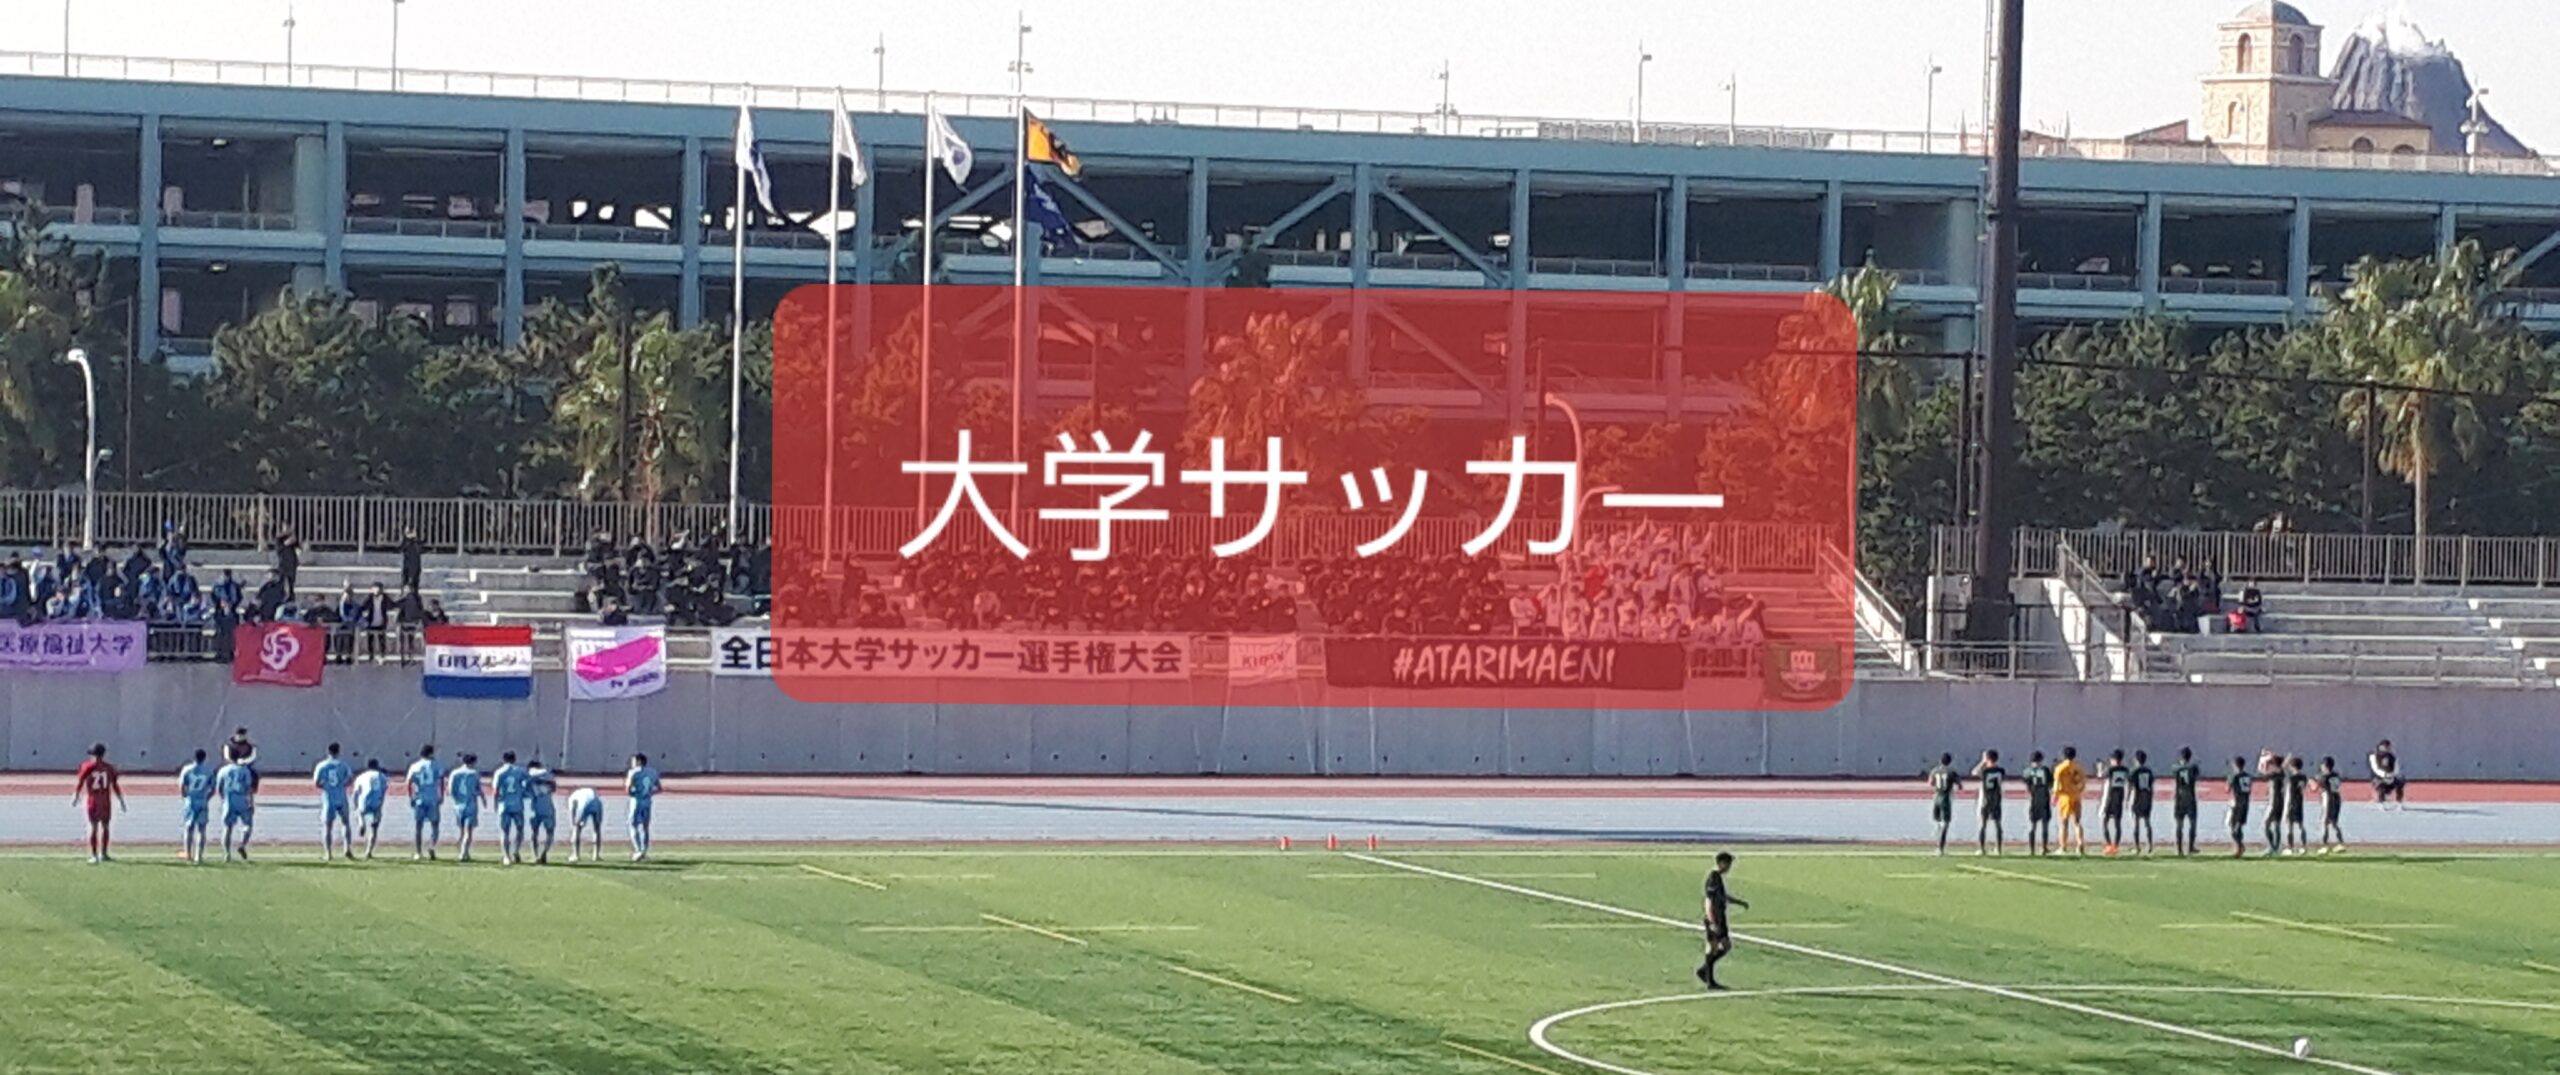 21 Jfl 開幕スタメン 出身大学ランキング １位は関西の強豪大学 マサリョーのサッカー後日弾